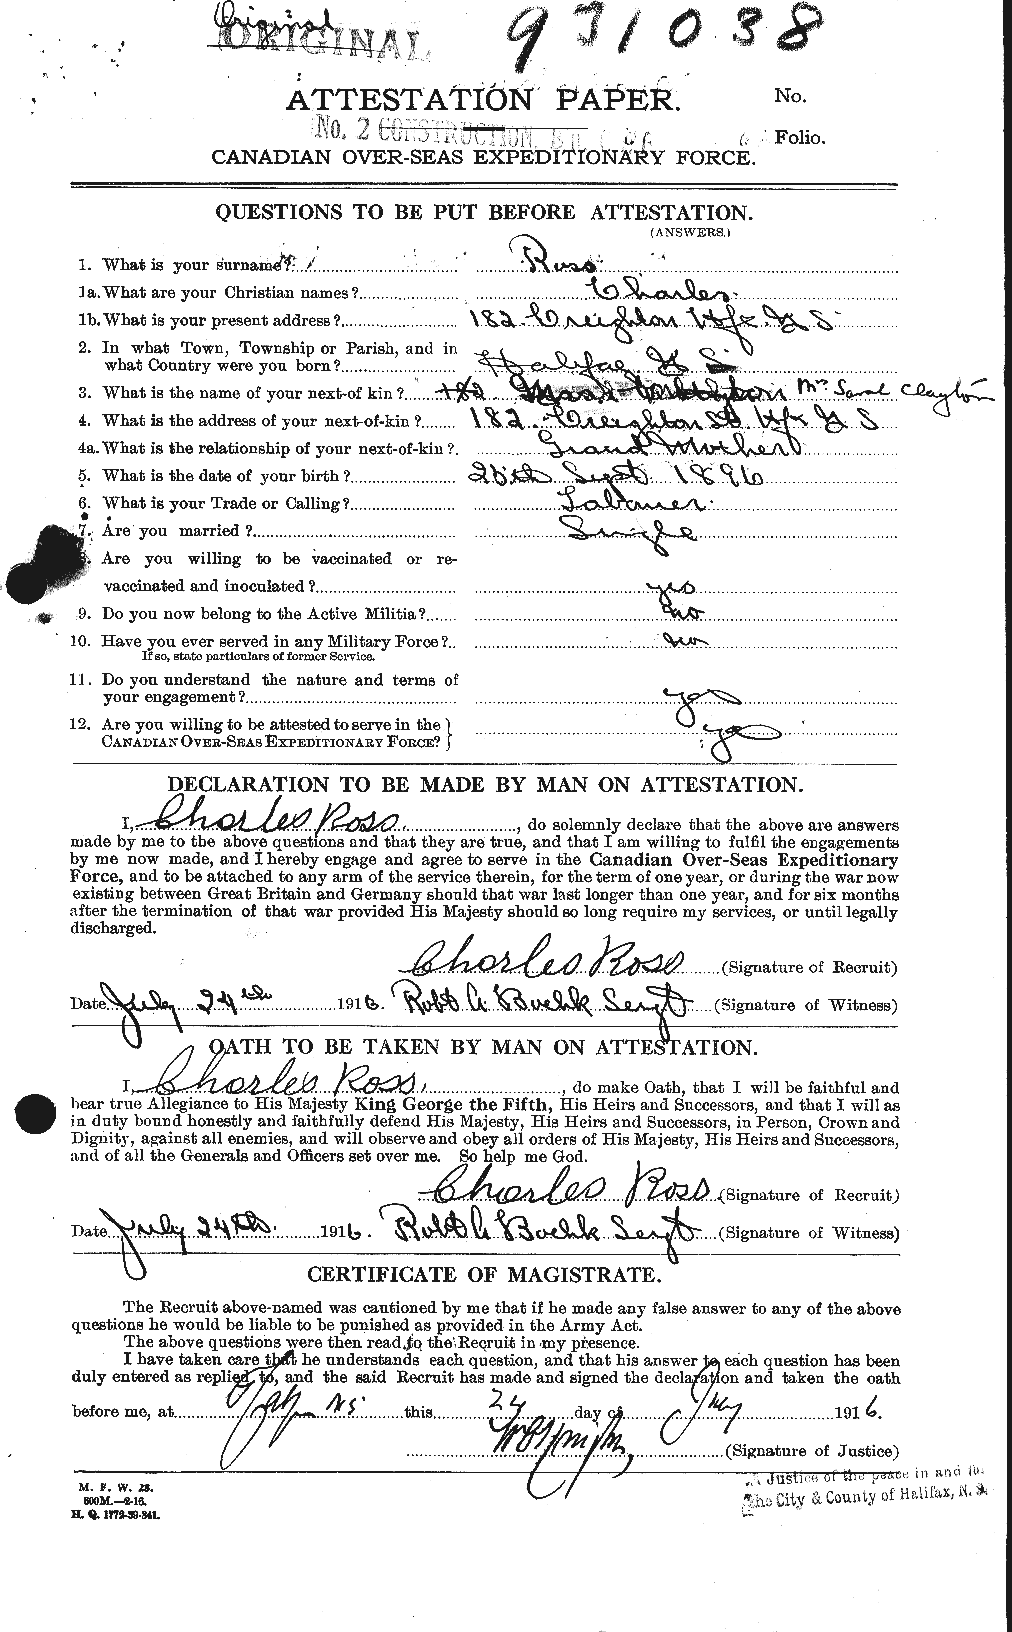 Dossiers du Personnel de la Première Guerre mondiale - CEC 612743a